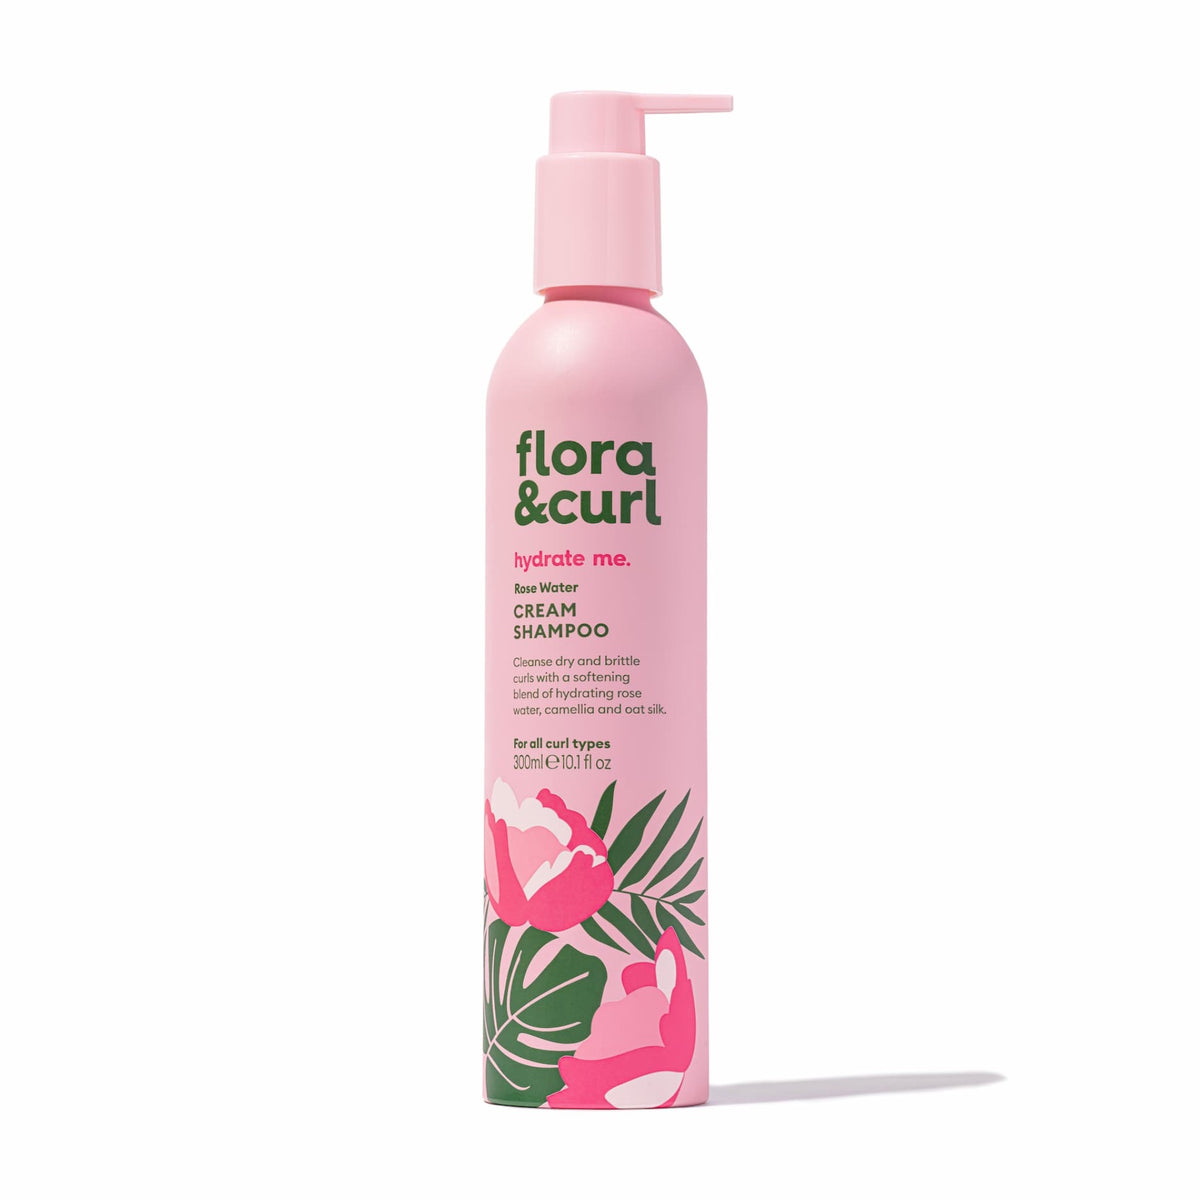 Rose Water Cream Shampoo de Flora & Curl a été créé spécialement pour les cheveux secs. Ce shampoing les hydrate, les nourrit et les protège de la casse.